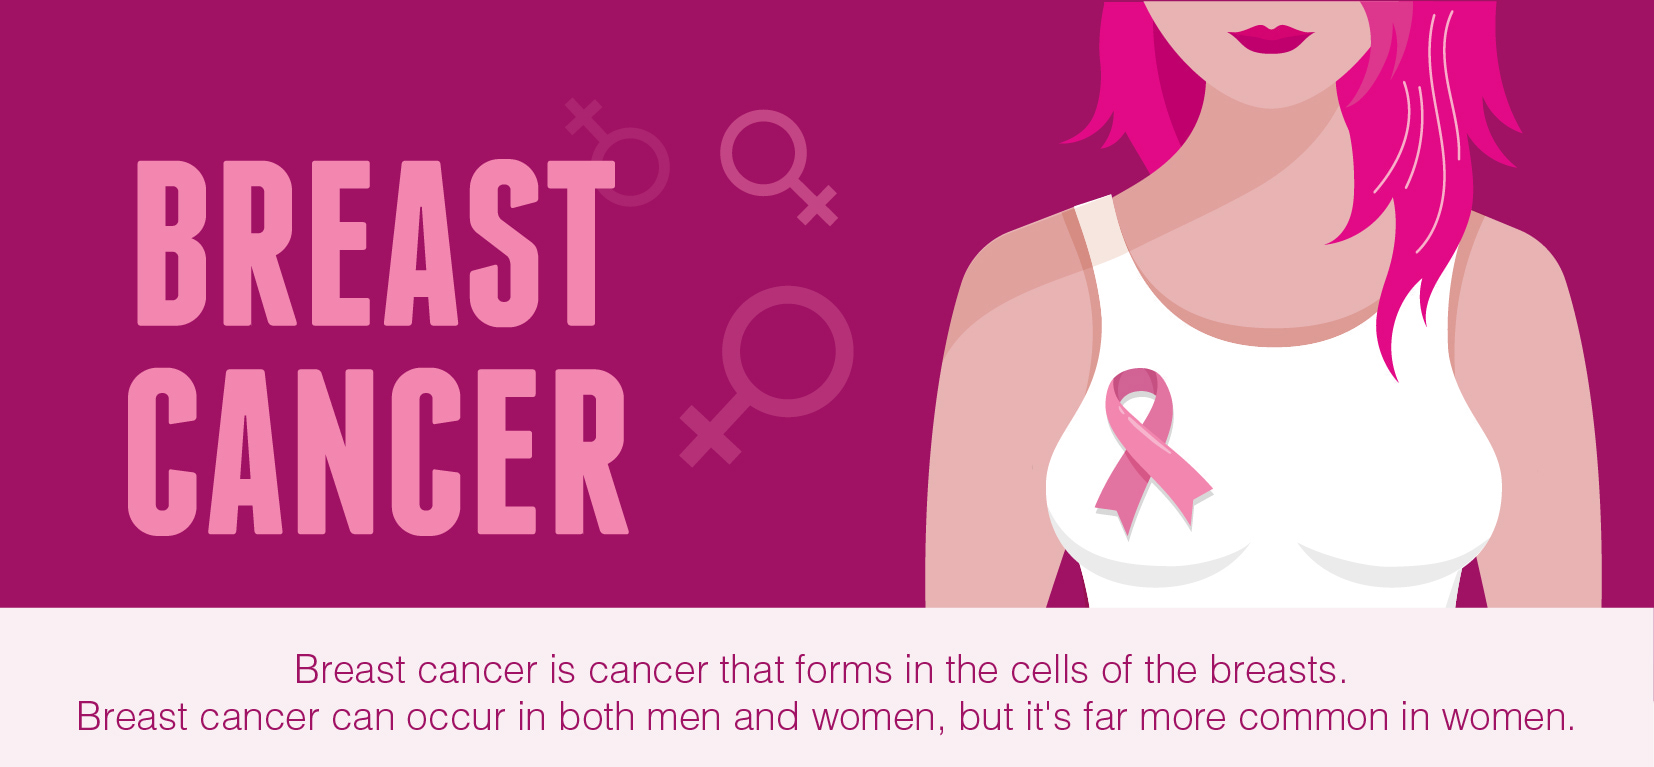 Breastcancer1 